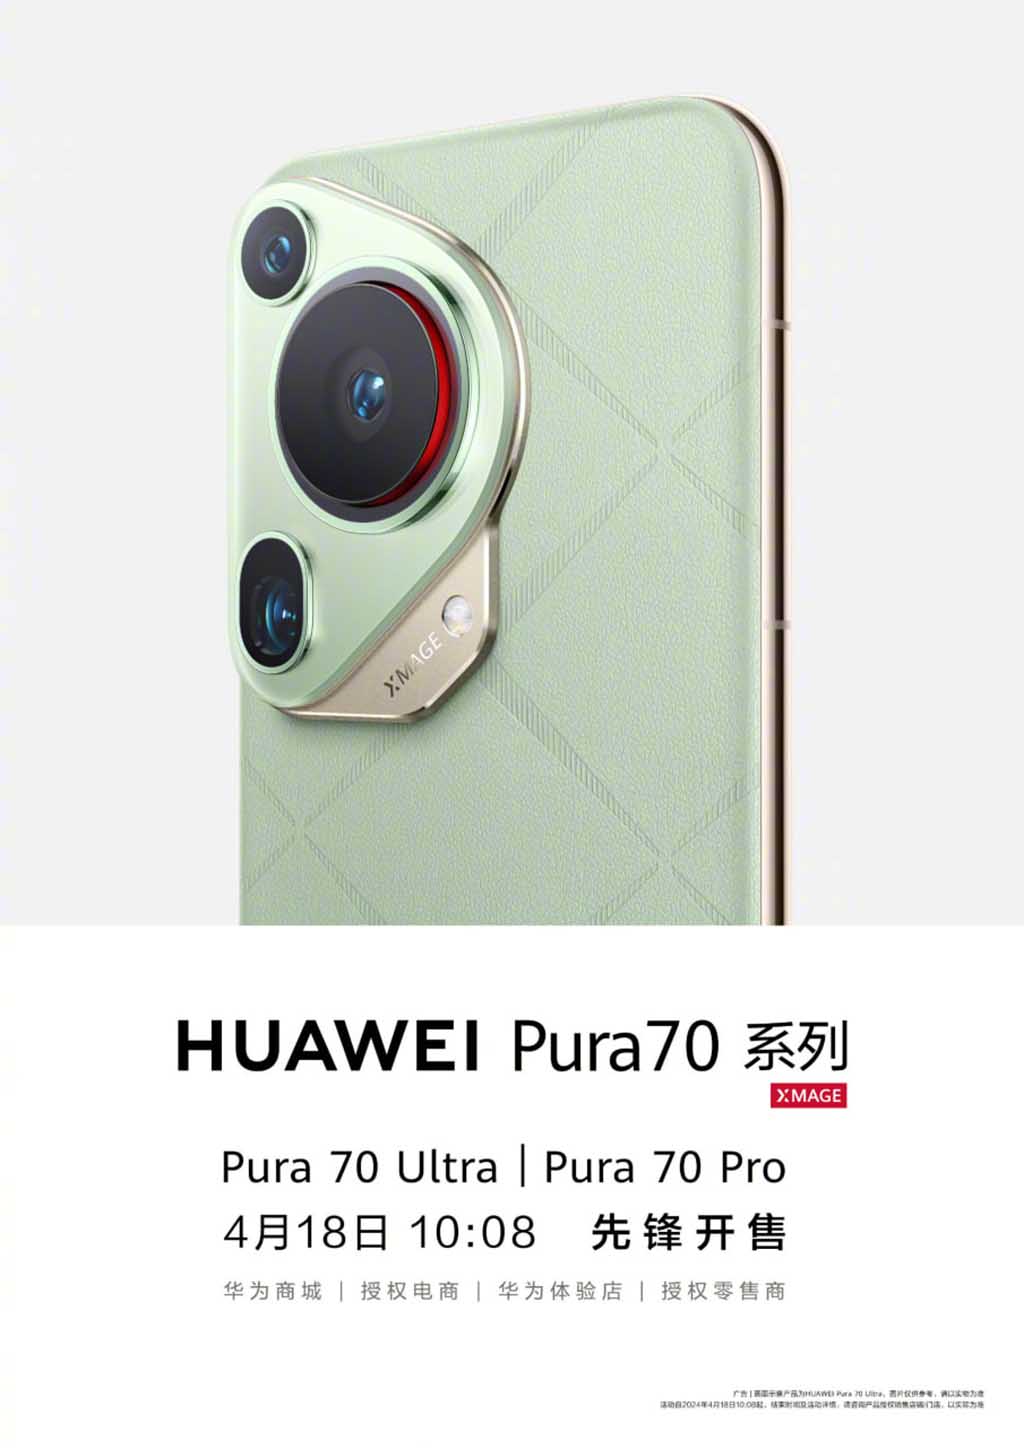 Технические характеристики Huawei Pura 70 Ultra